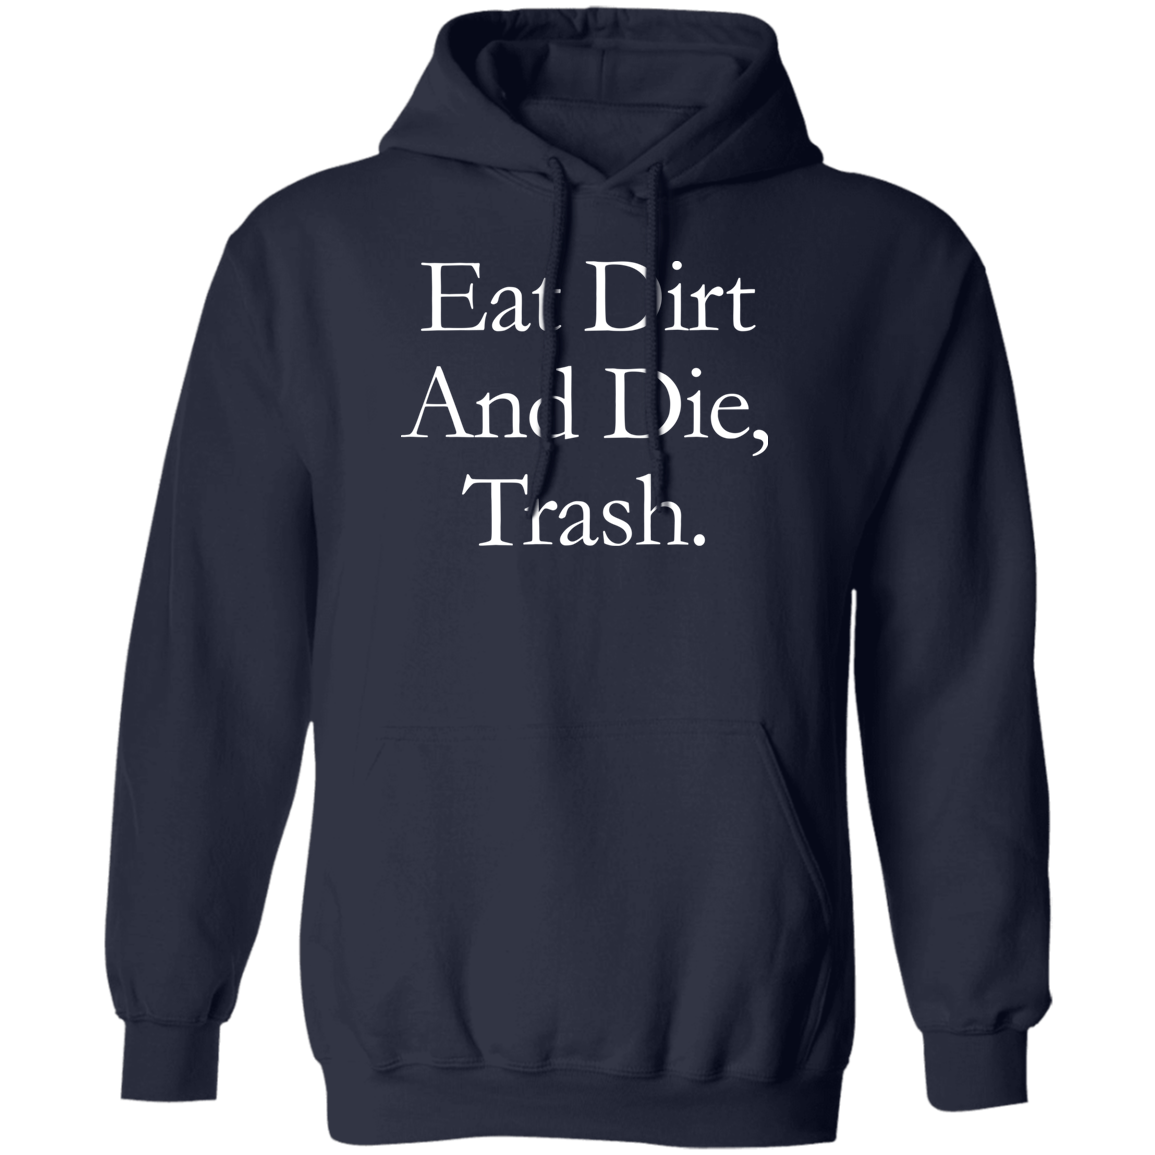 Eat Dirt And Die, Trash Hoodie